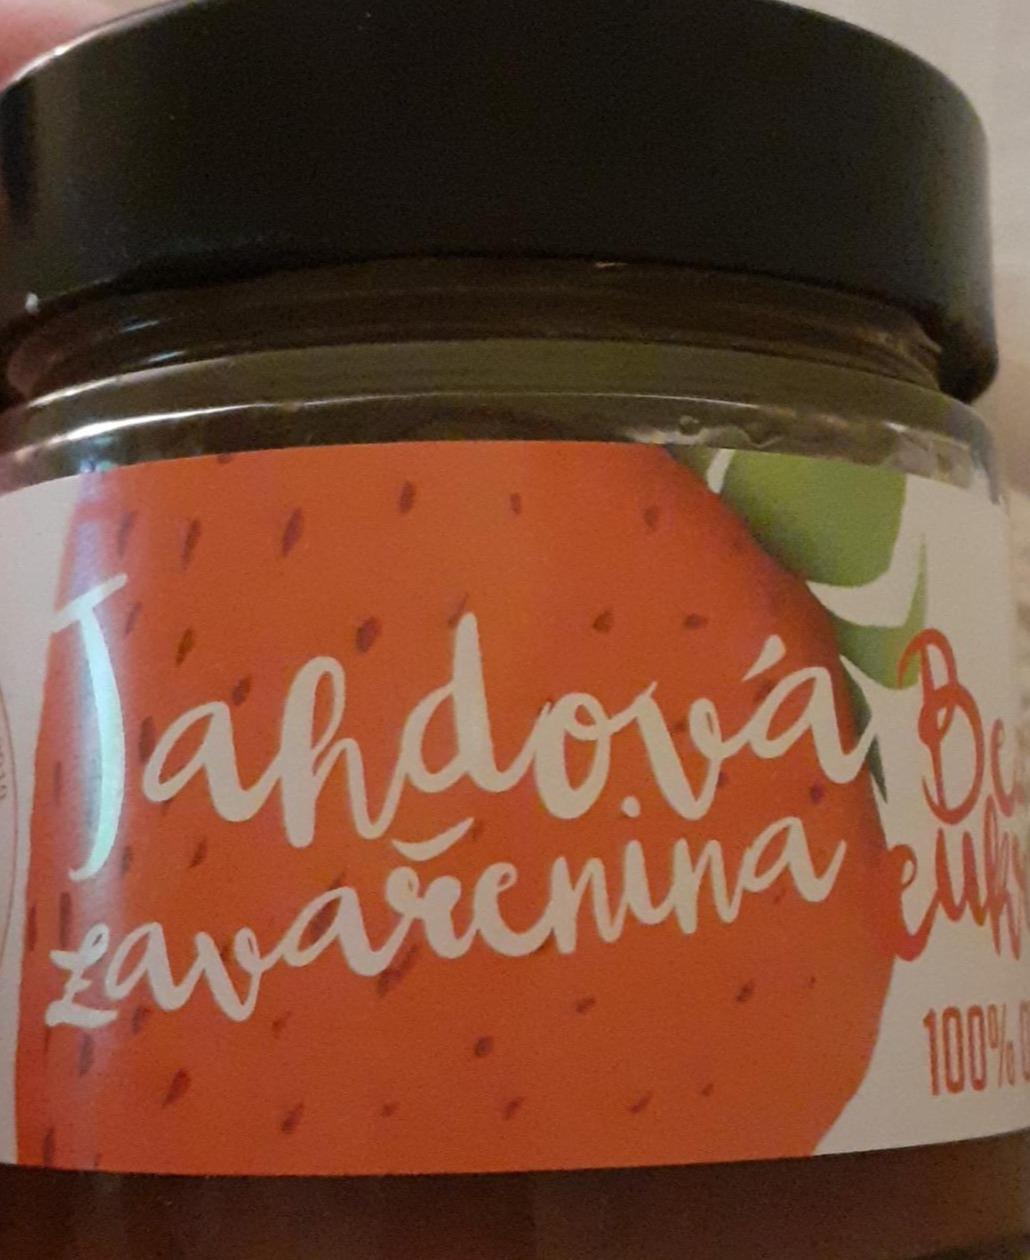 Fotografie - Jahodová zavařenina bez cukru 100% ovoce Hradecké delikatesy